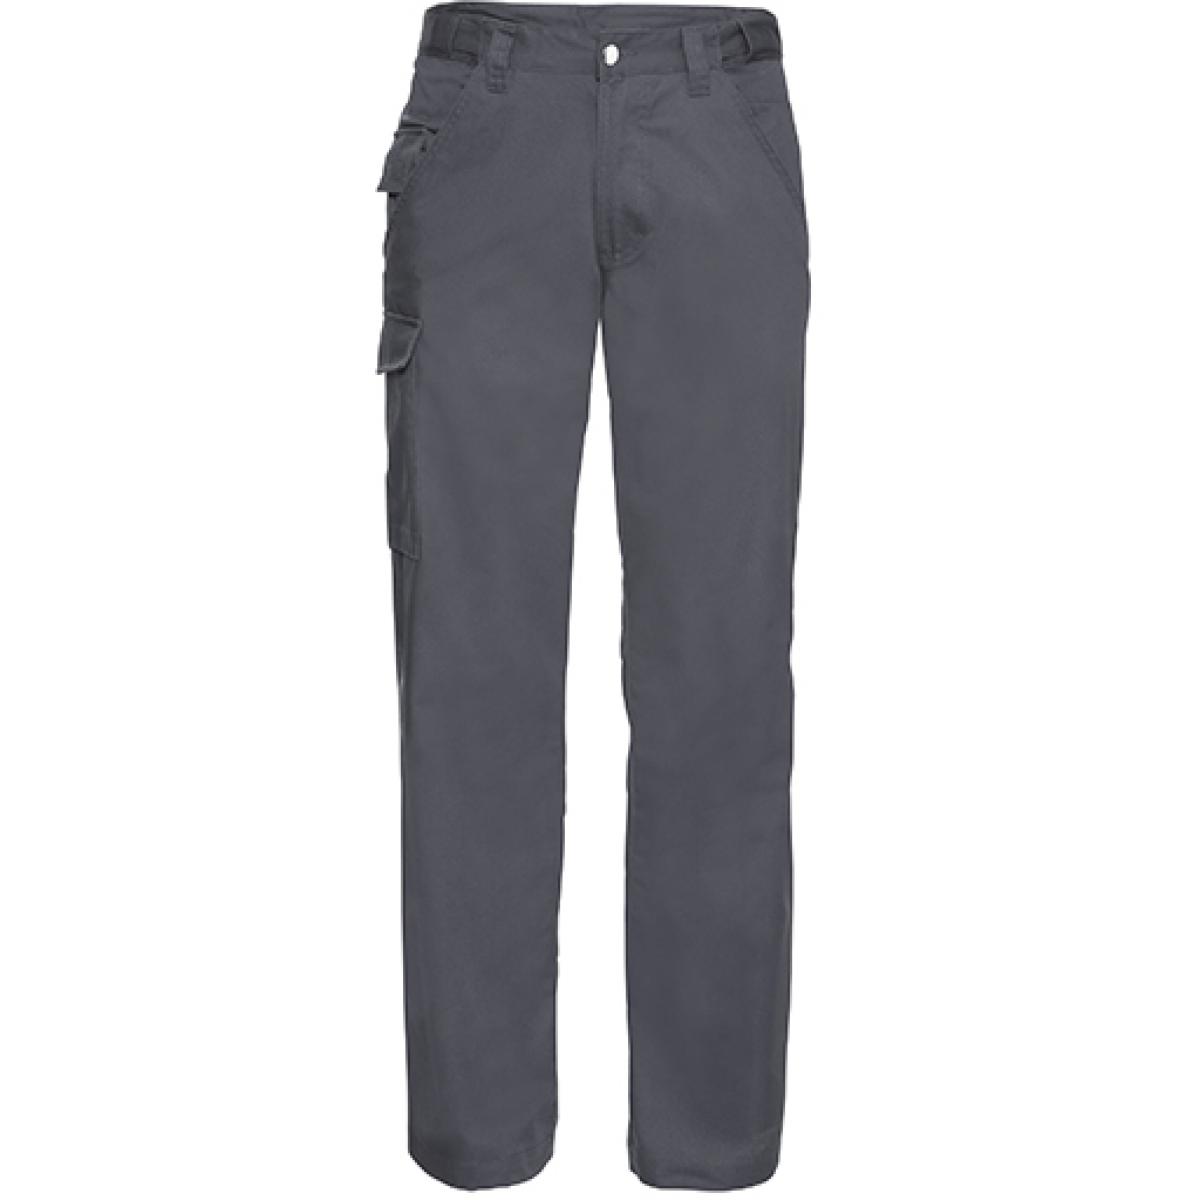 Hersteller: Russell Herstellernummer: R-001M-0 Artikelbezeichnung: Workwear-Hose aus Polyester-/Baumwoll-Twill Farbe: Convoy Grey (Solid)